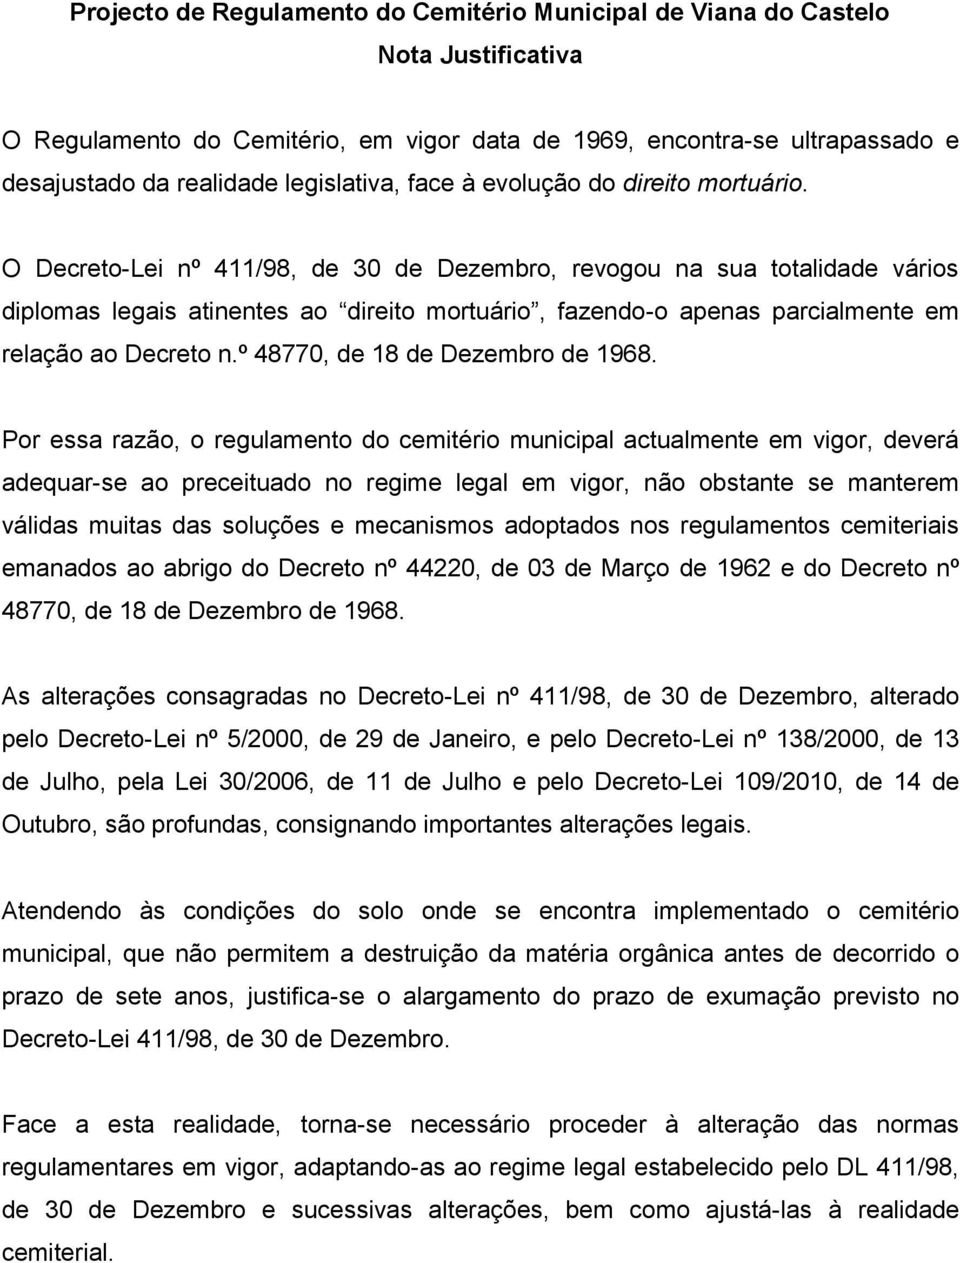 O Decreto-Lei nº 411/98, de 30 de Dezembro, revogou na sua totalidade vários diplomas legais atinentes ao direito mortuário, fazendo-o apenas parcialmente em relação ao Decreto n.